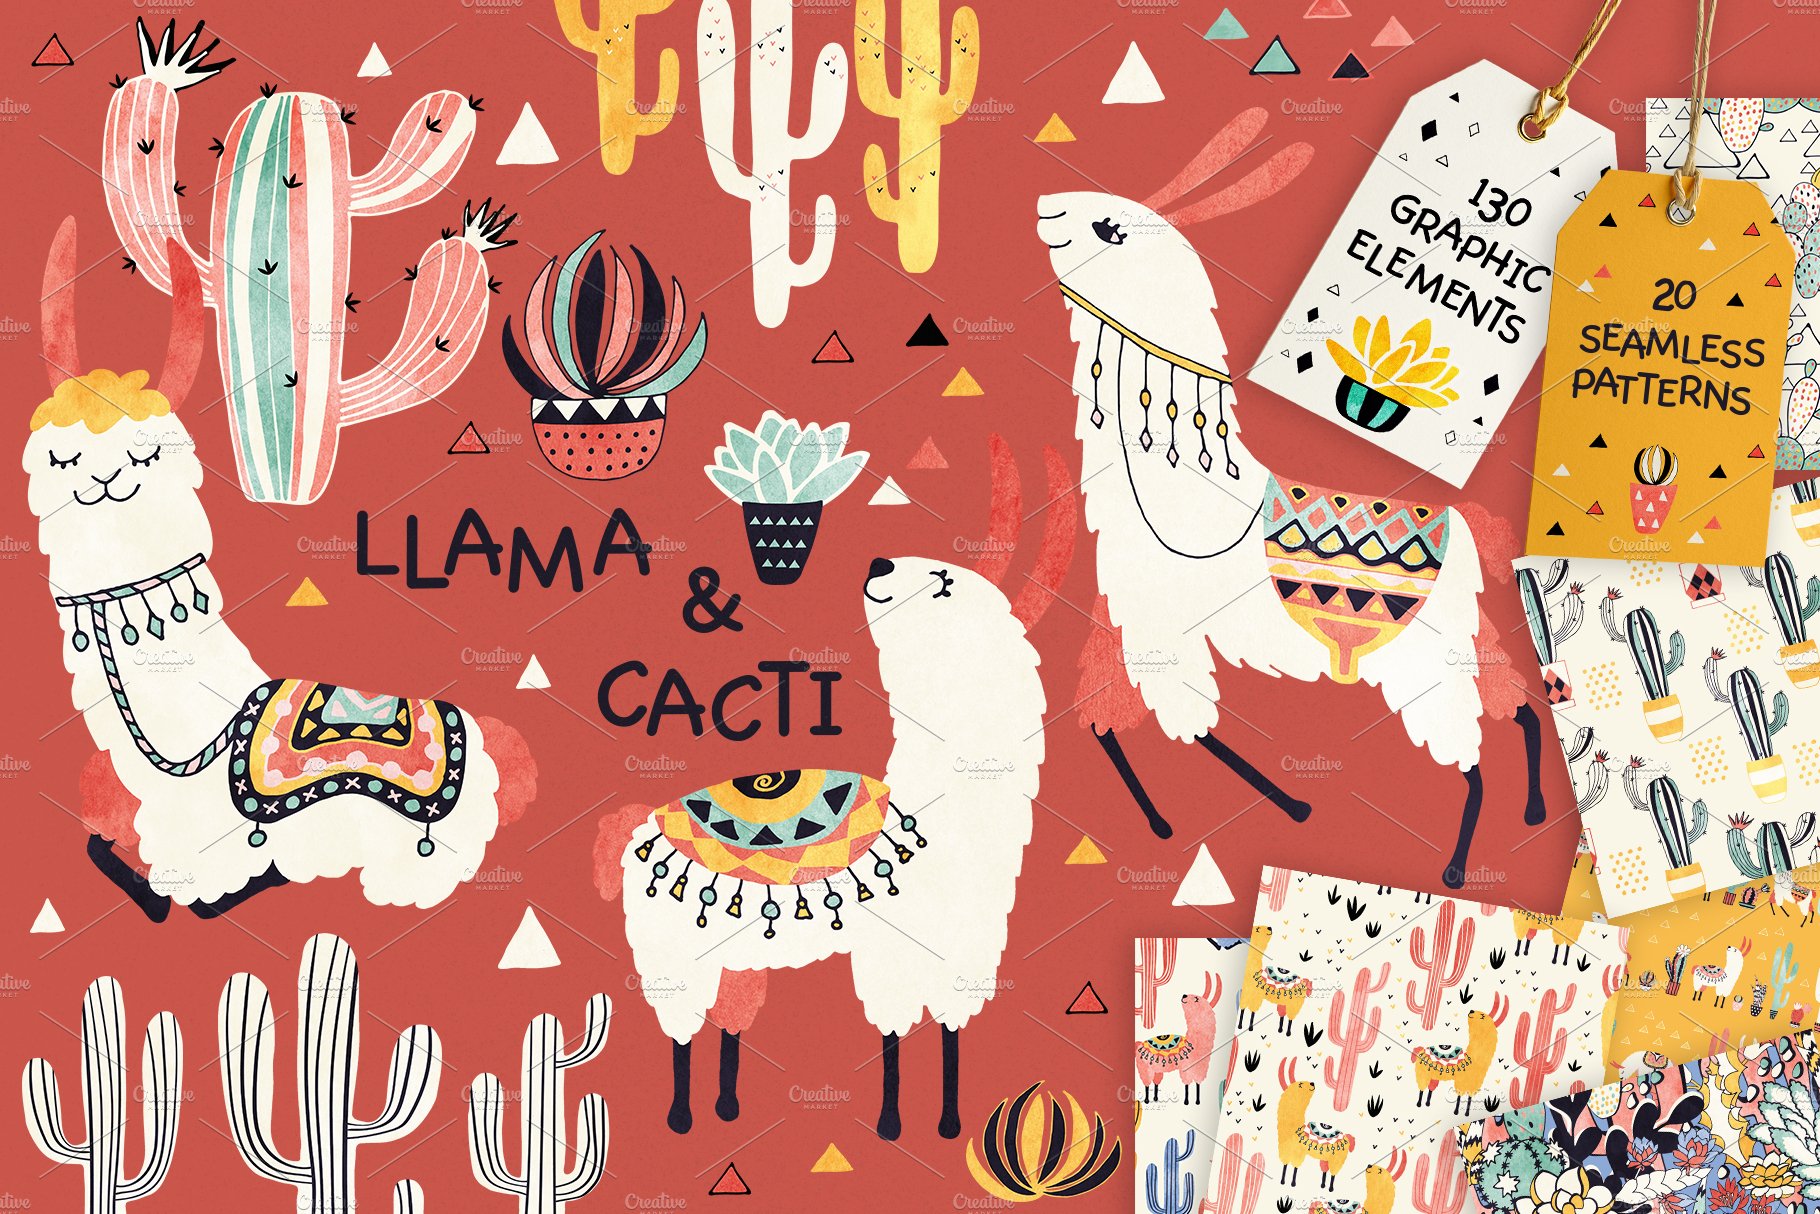 Llamas and Cacti cover image.